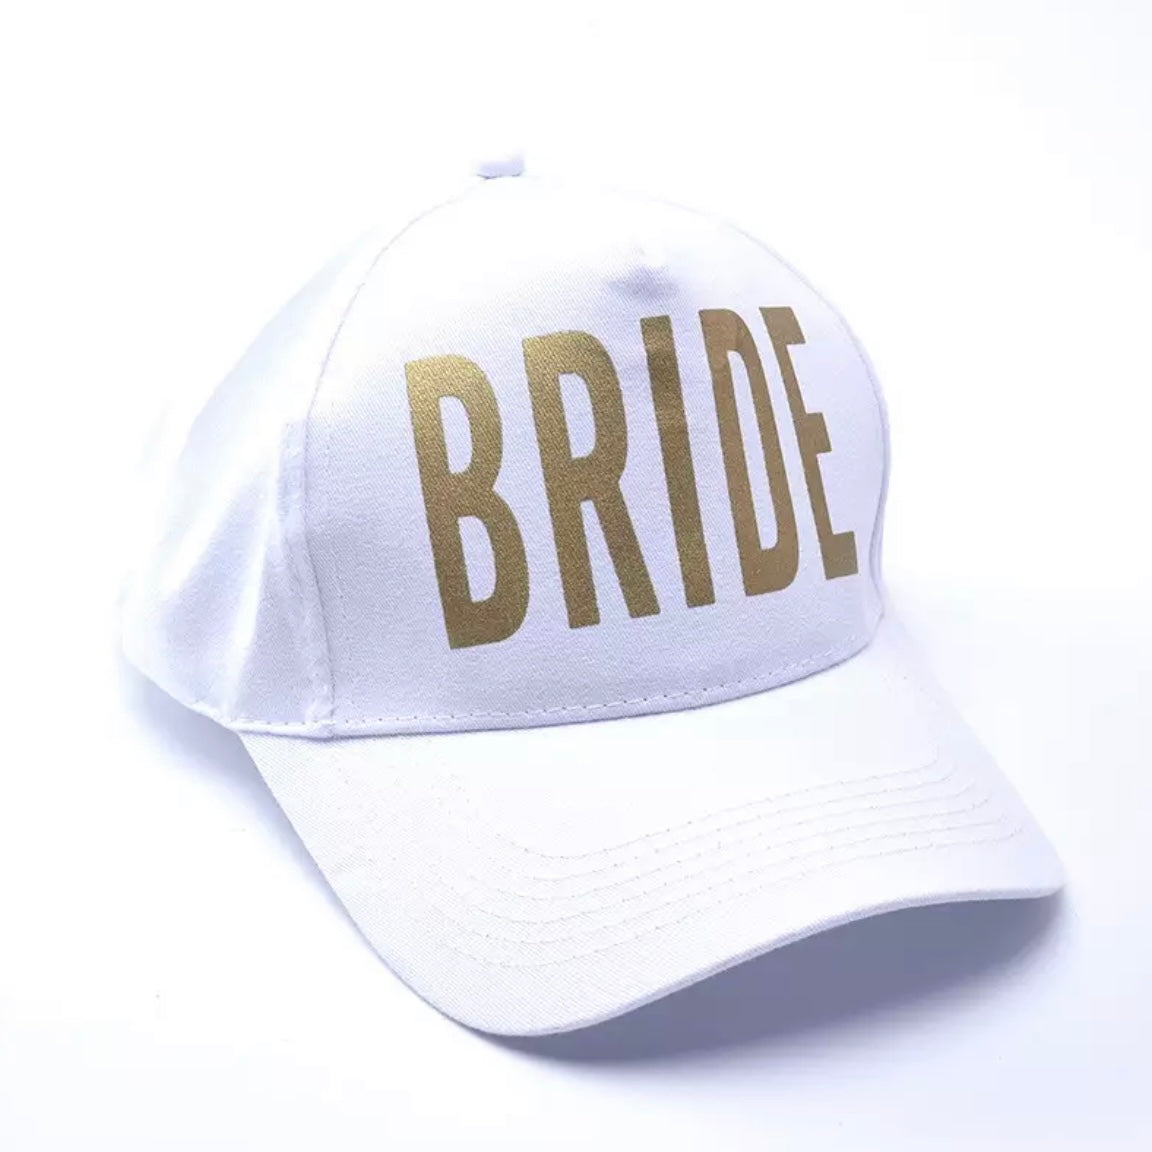 White baseball hat - BRIDE